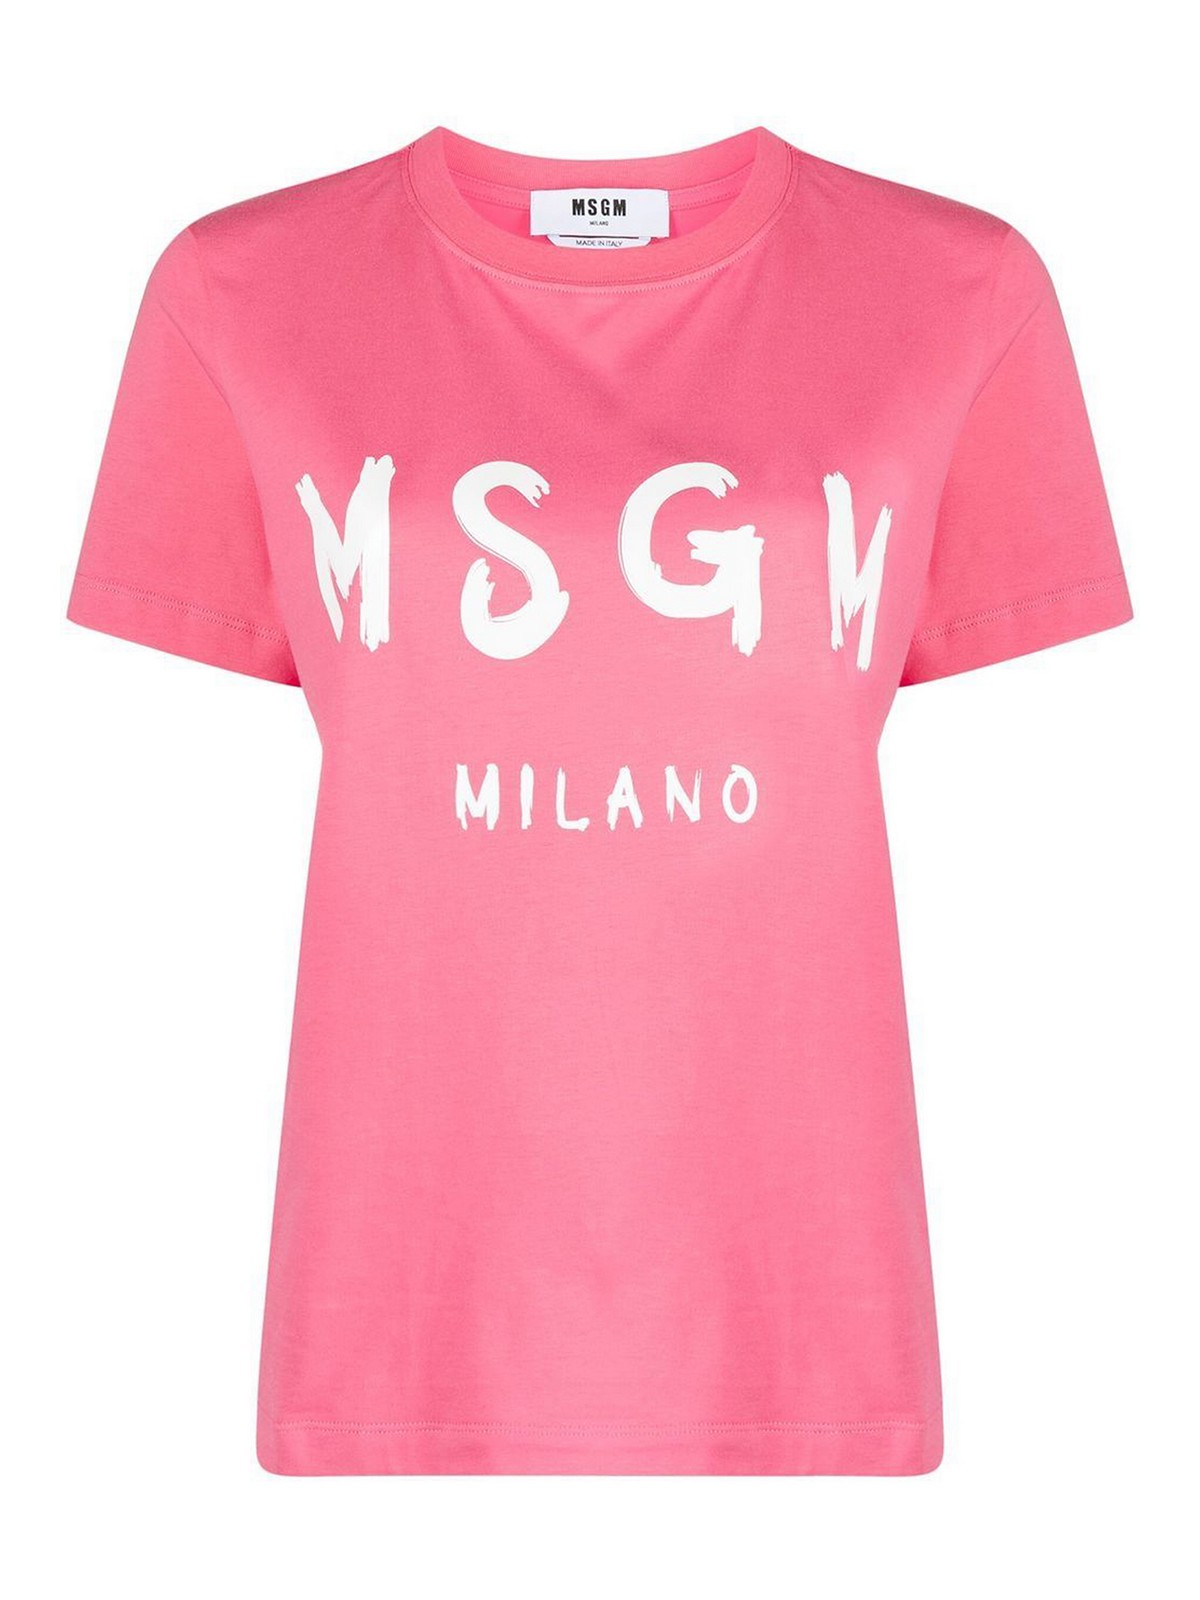 Tシャツ M.S.G.M. - Tシャツ - ピンク - 3441MDM51023700214